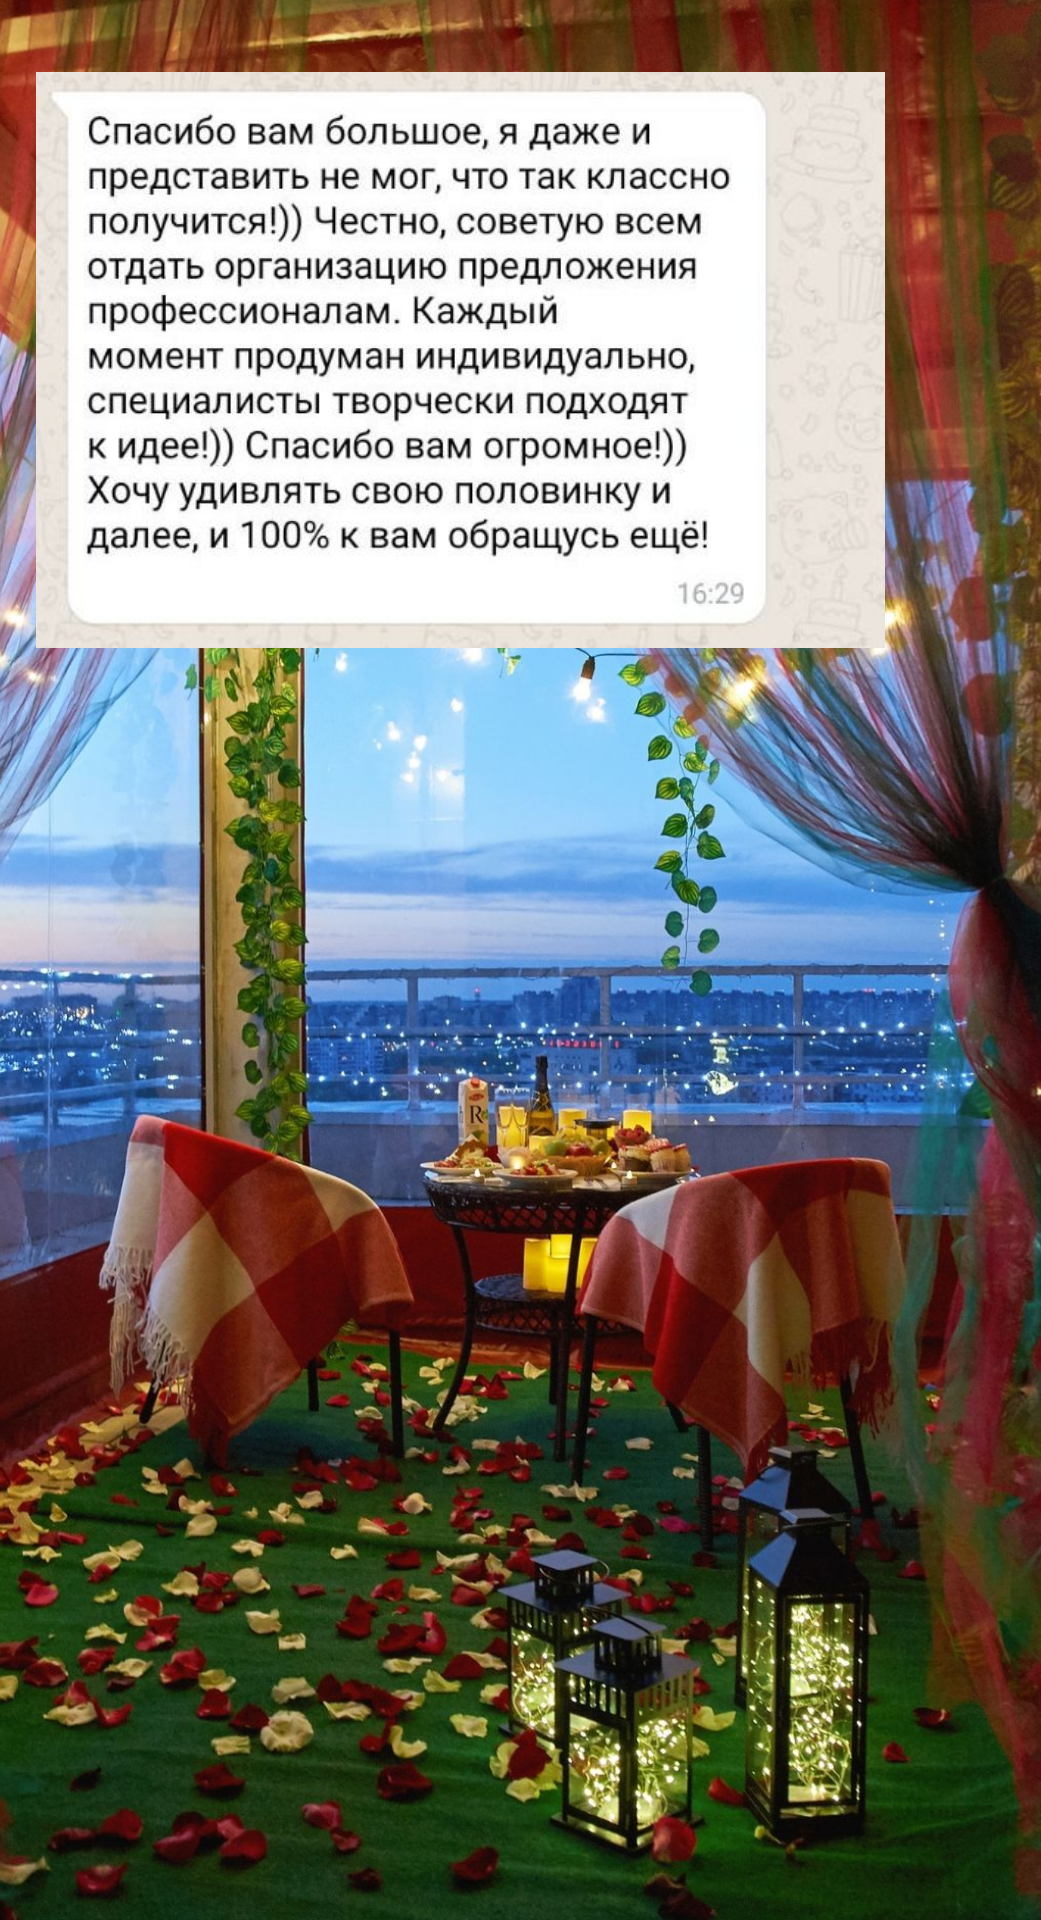 Организация предложения руки и сердца в Казани
от компании Pandaevent